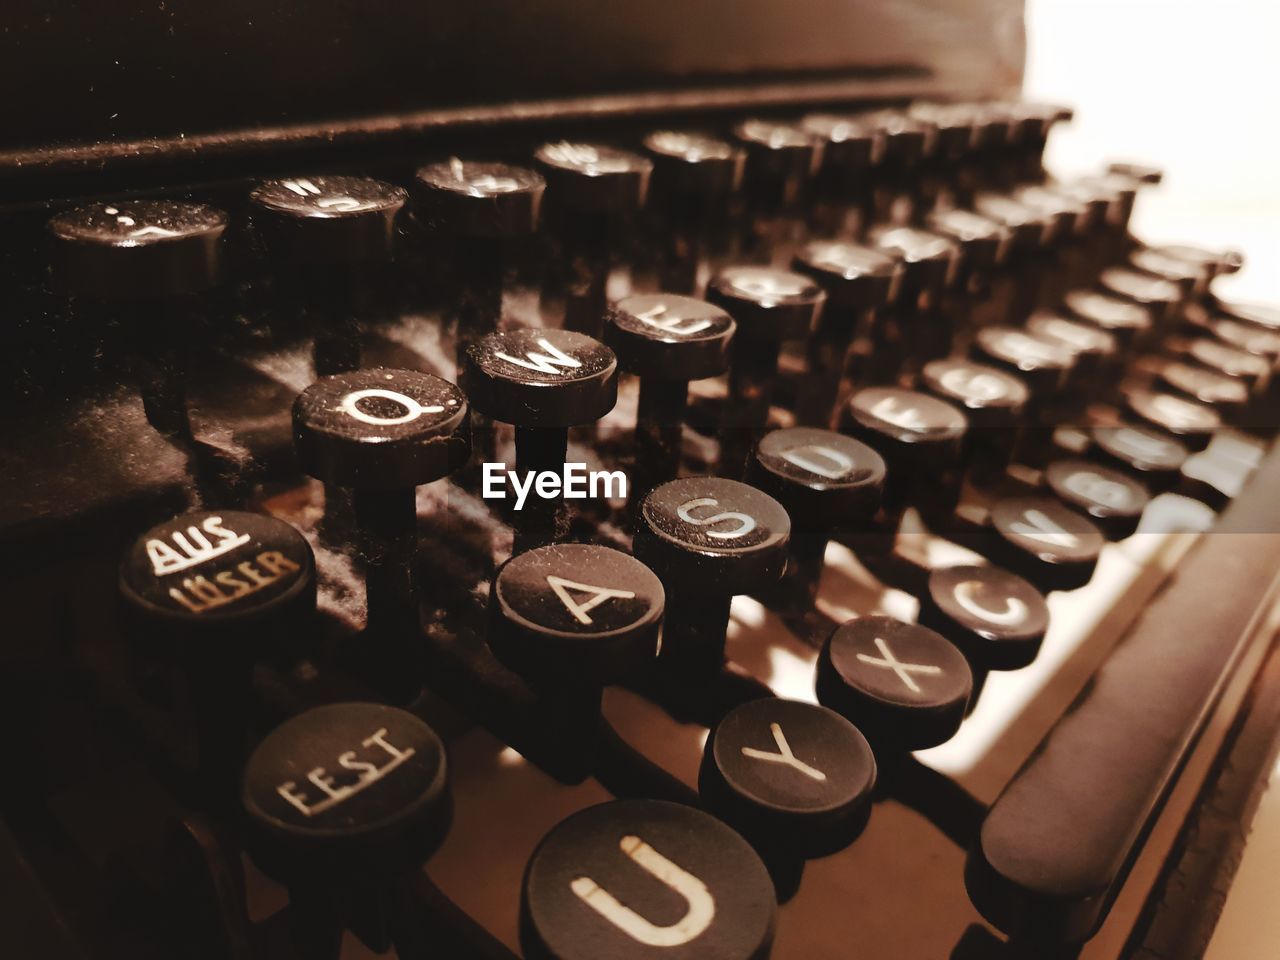 Close-up of old typewriter